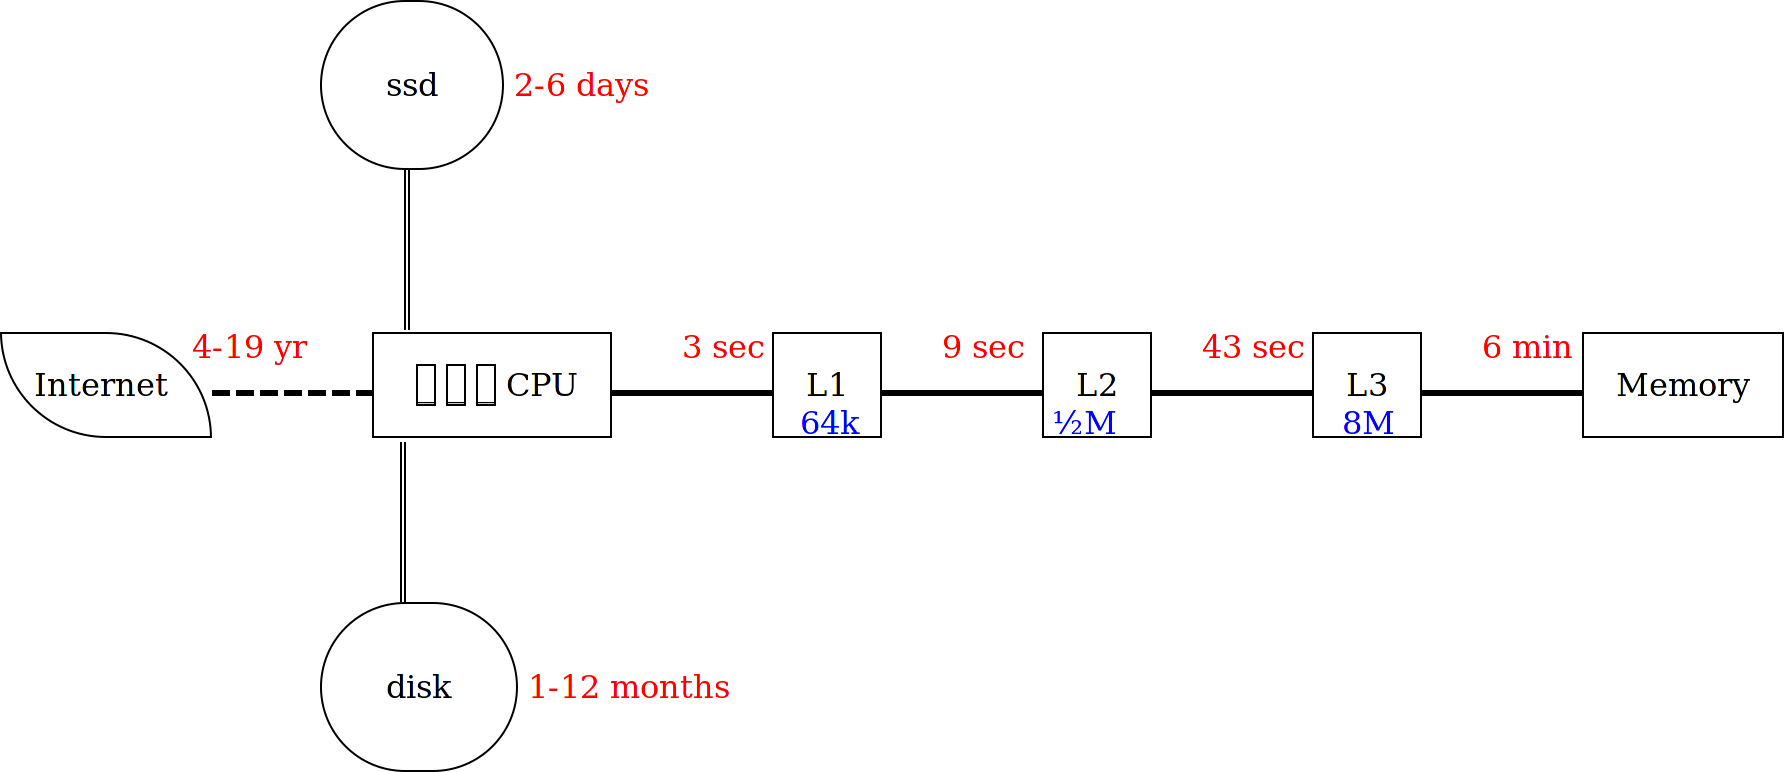 CPU+Internet access time